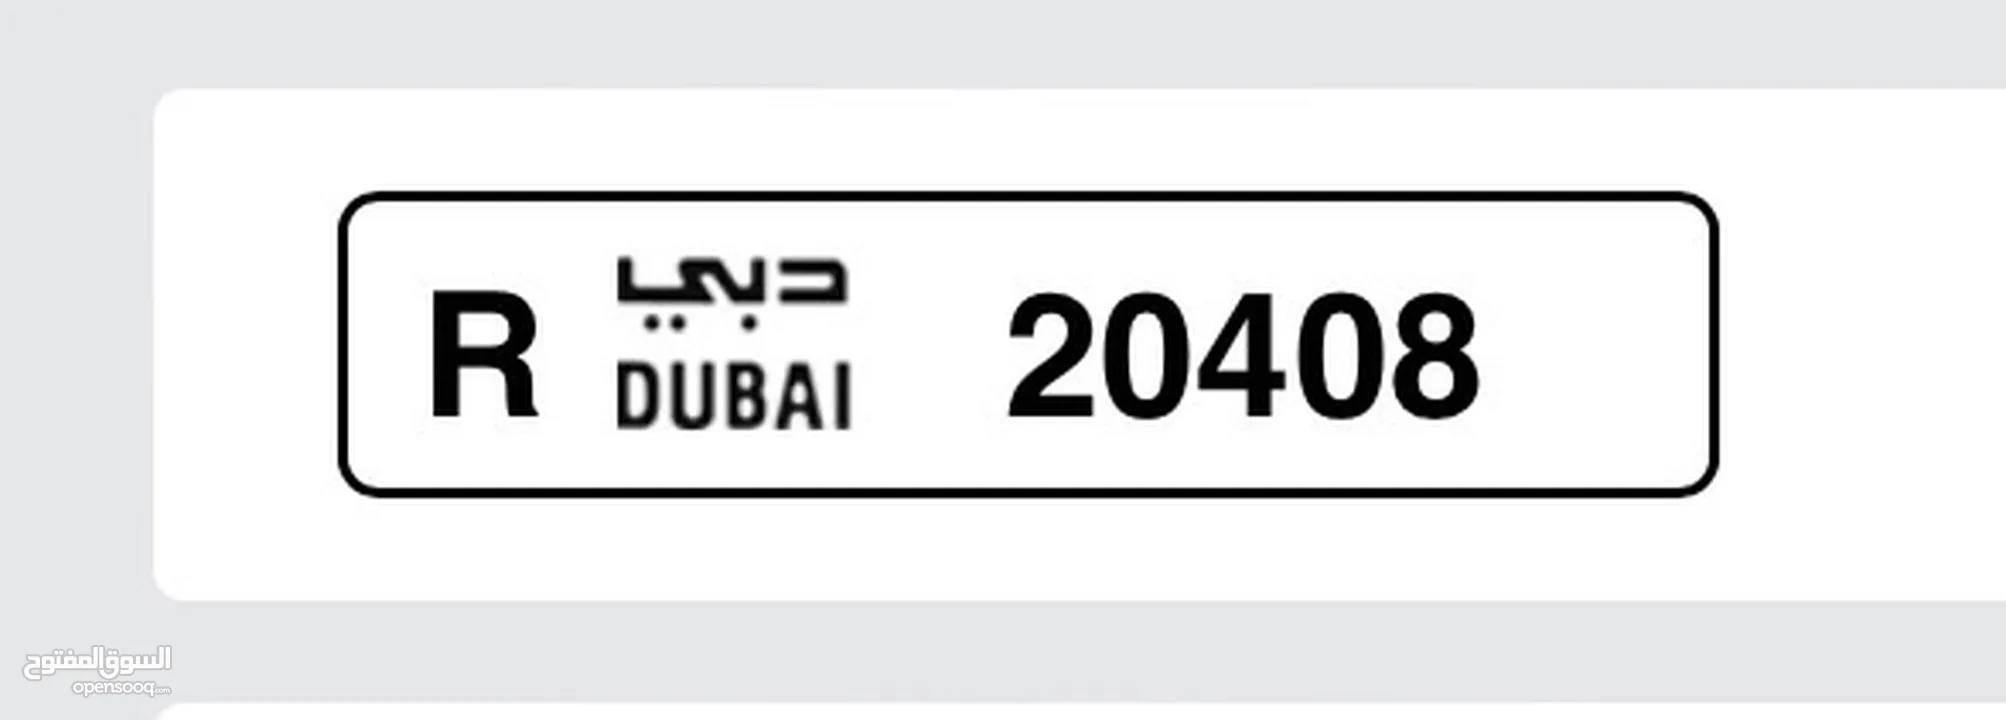 لوحة سيارة للبيع دبي